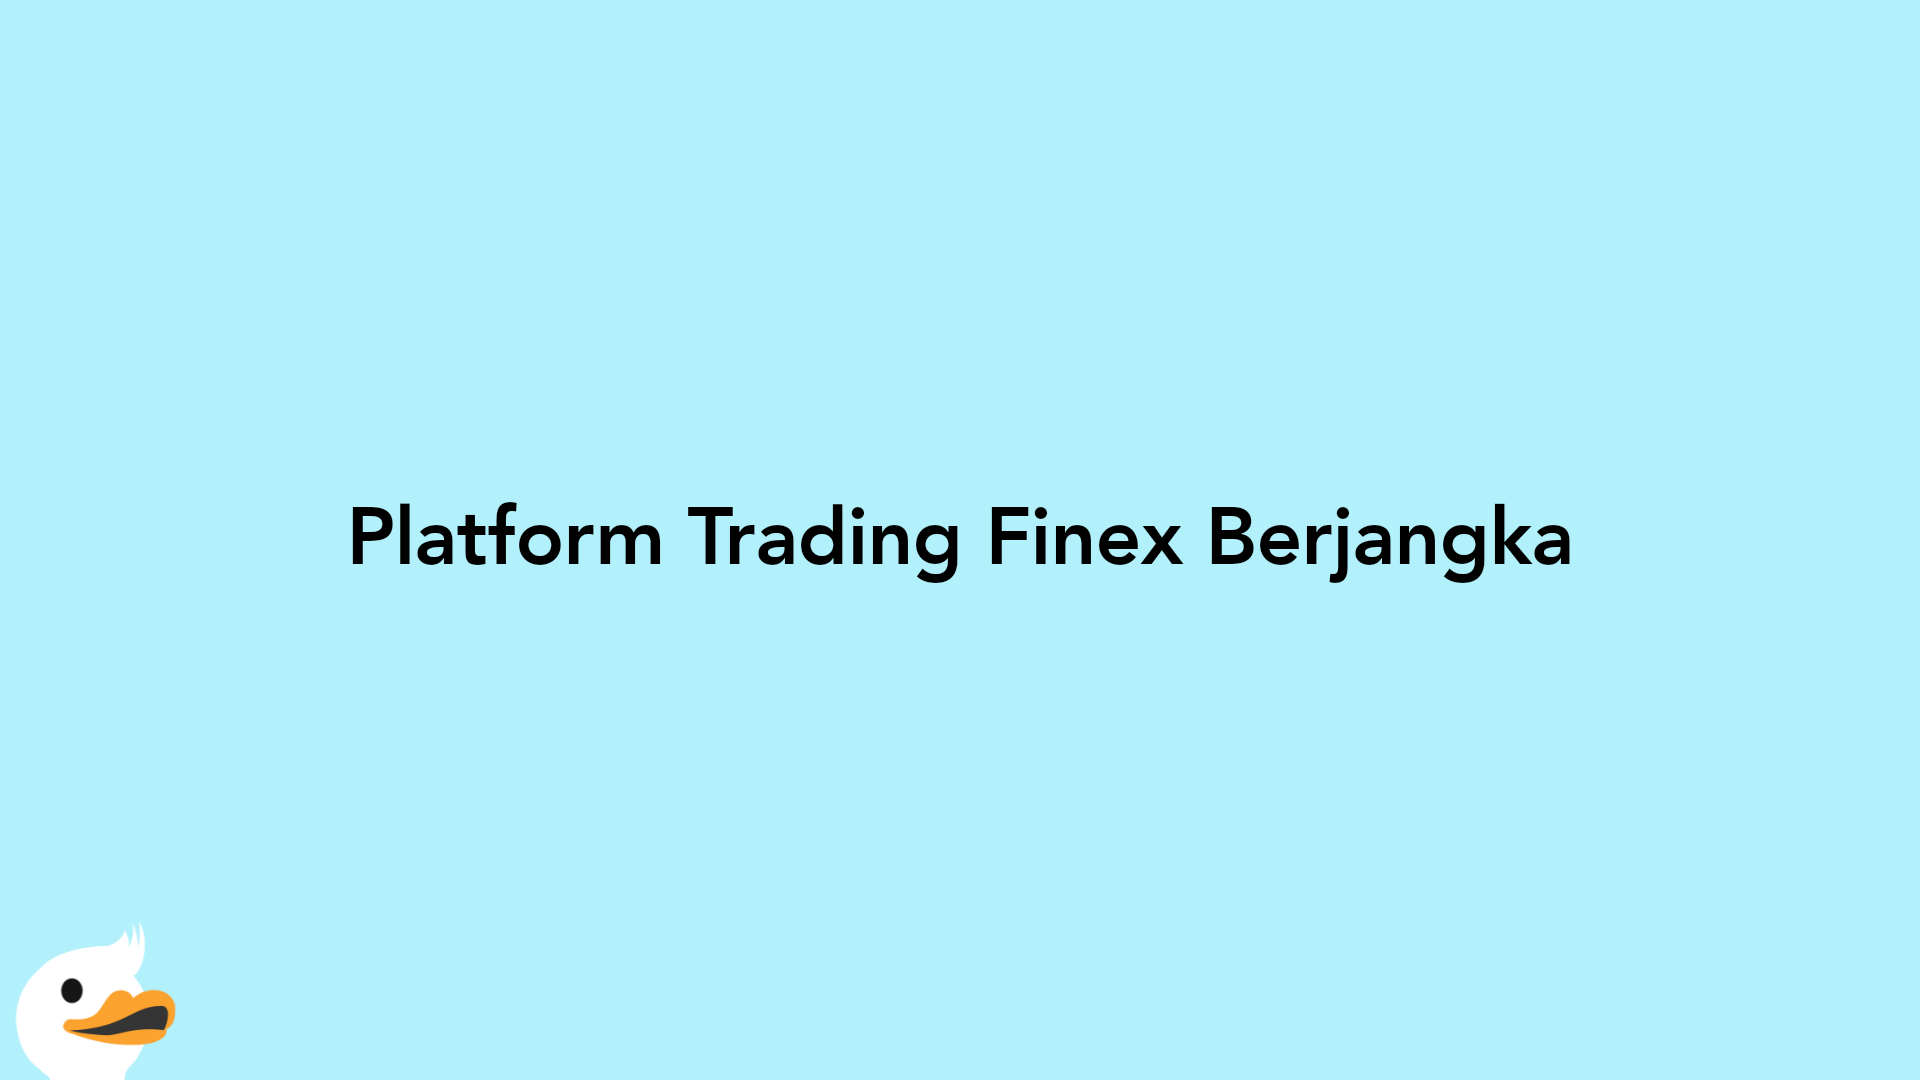 Platform Trading Finex Berjangka